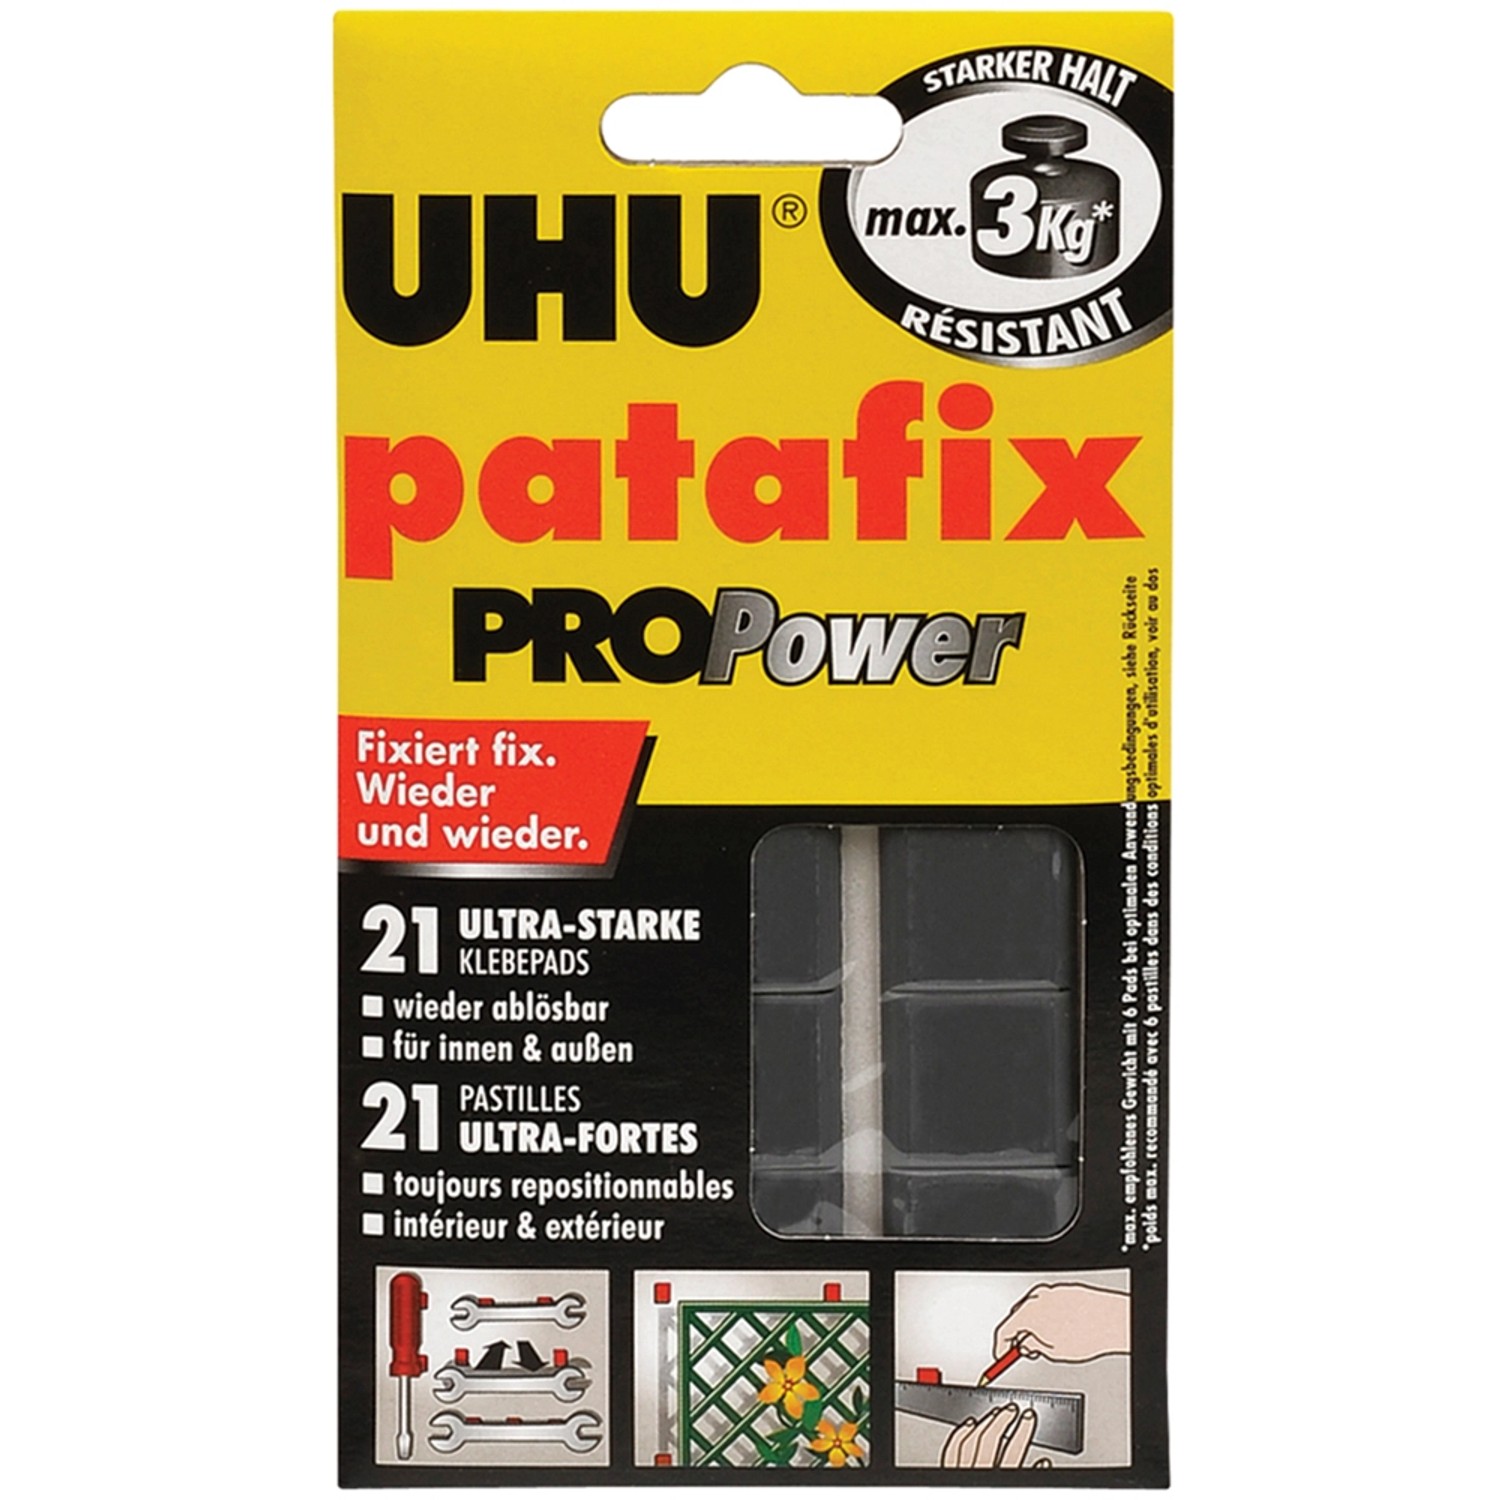 Uhu Patafix Pro Power 21 Pads